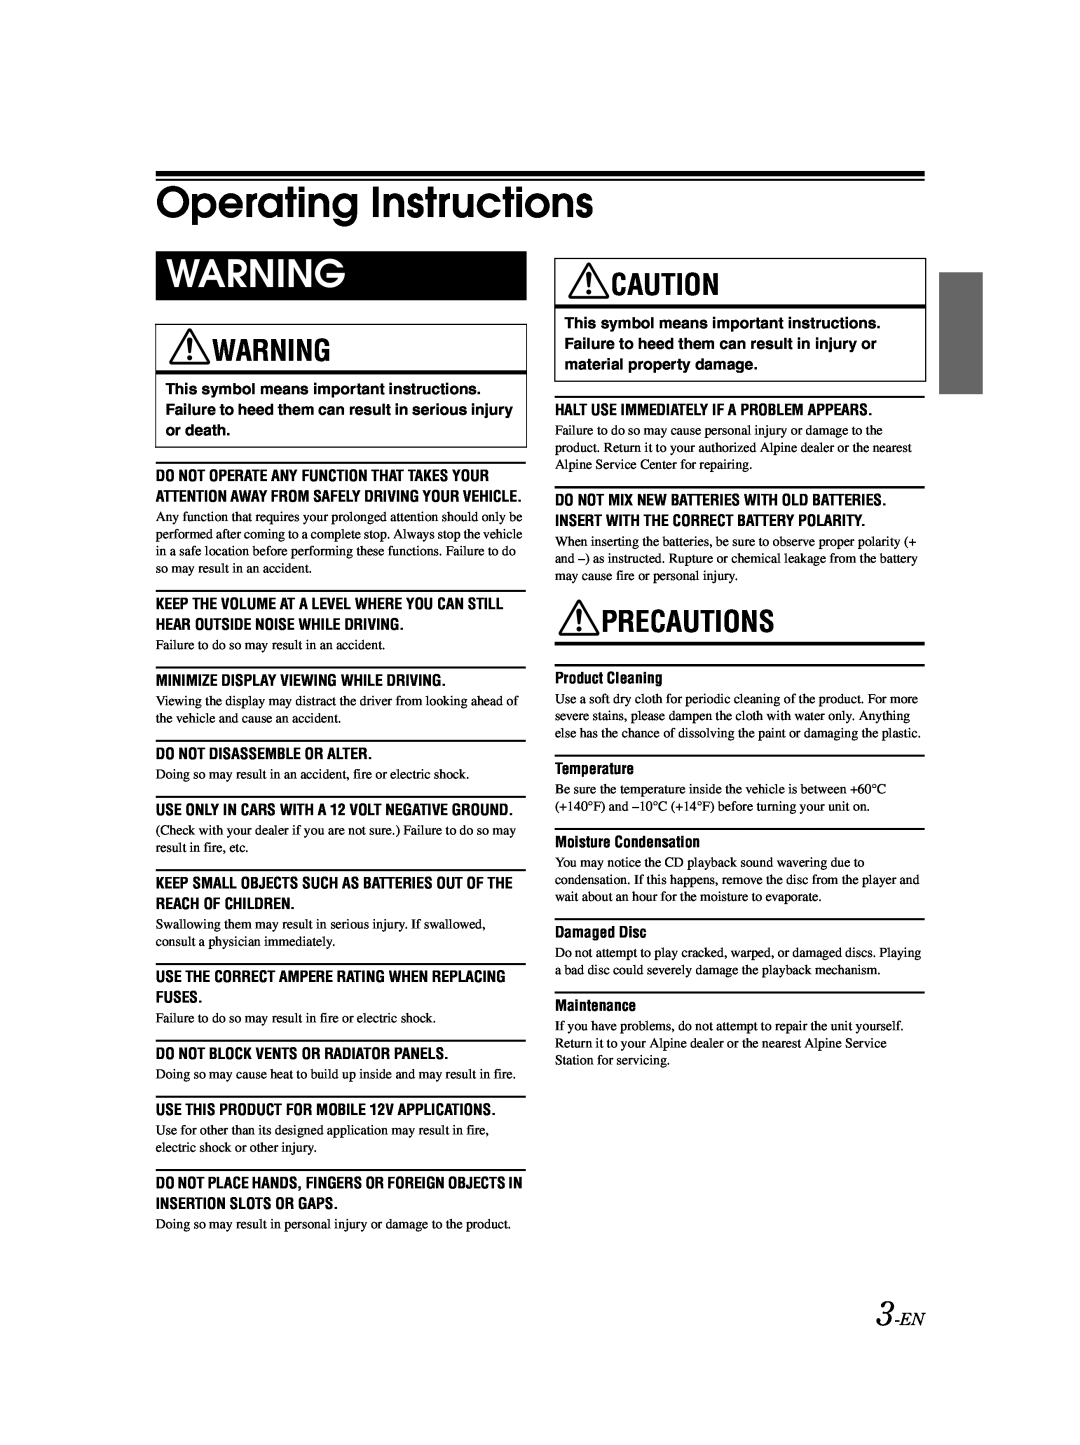 Alpine CDA-9857 owner manual Operating Instructions, Precautions, 3-EN 